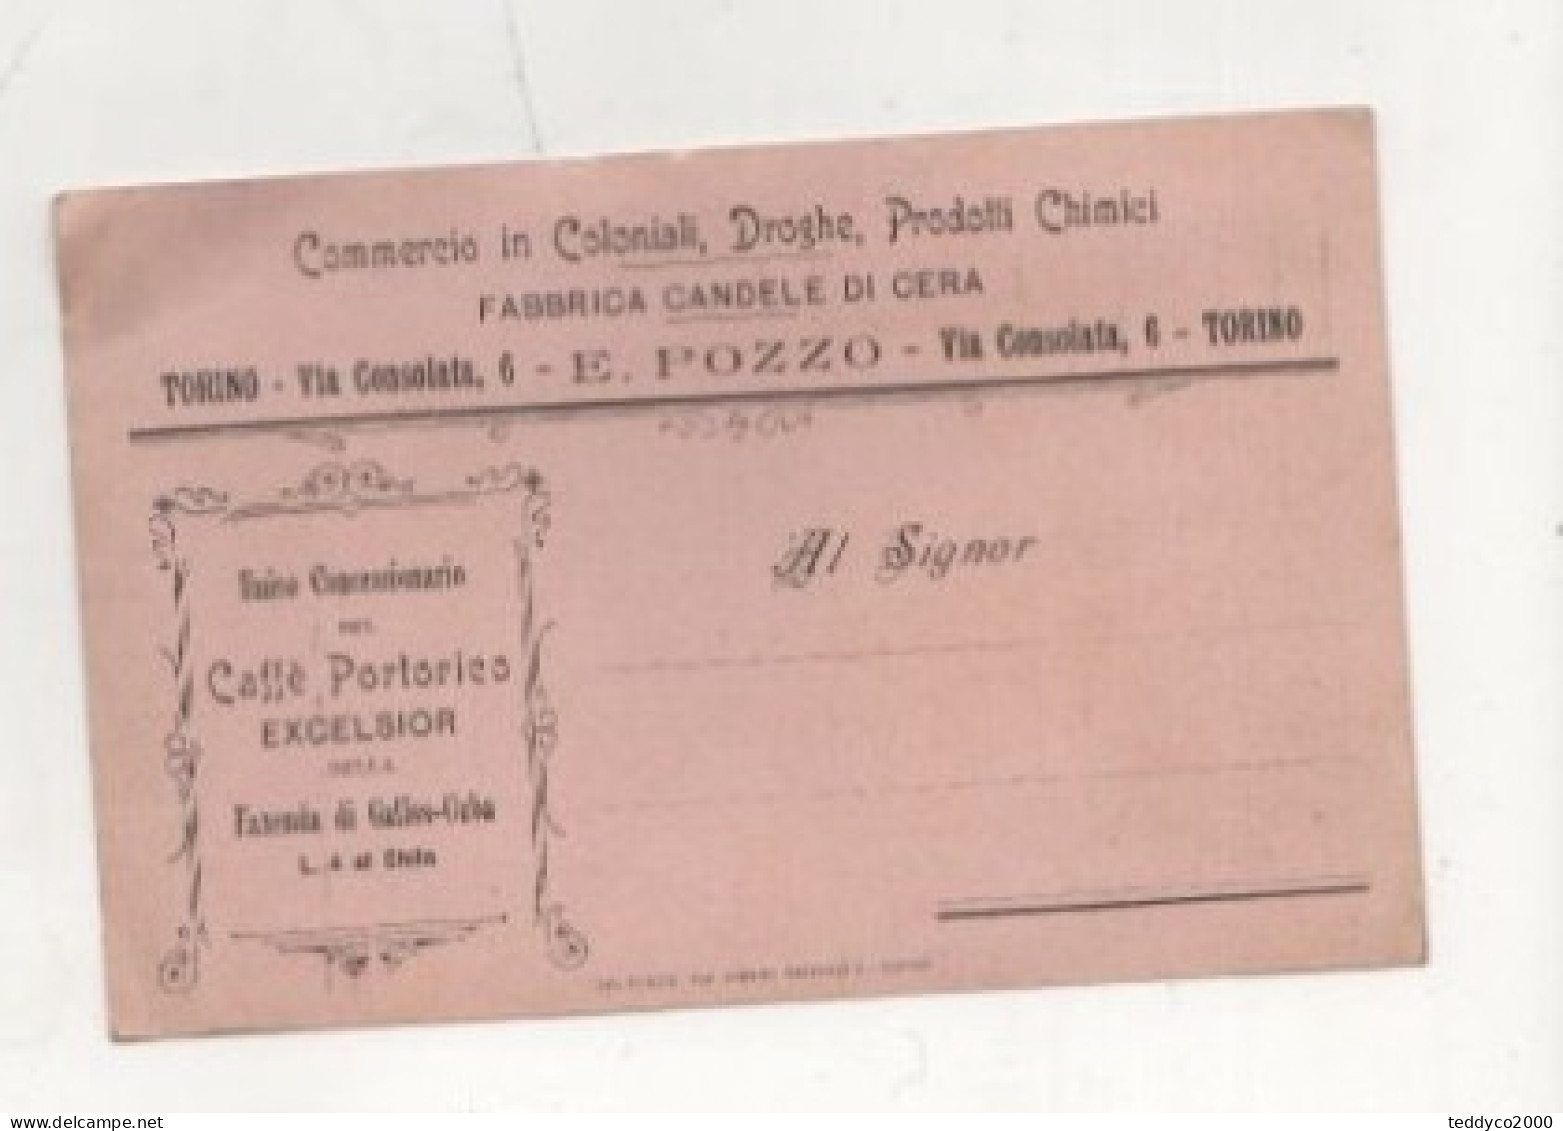 CARTOLINA COMMERCIALE E. POZZO FABBRICA CANDELE DI CERA TORINO 1903 - Advertising